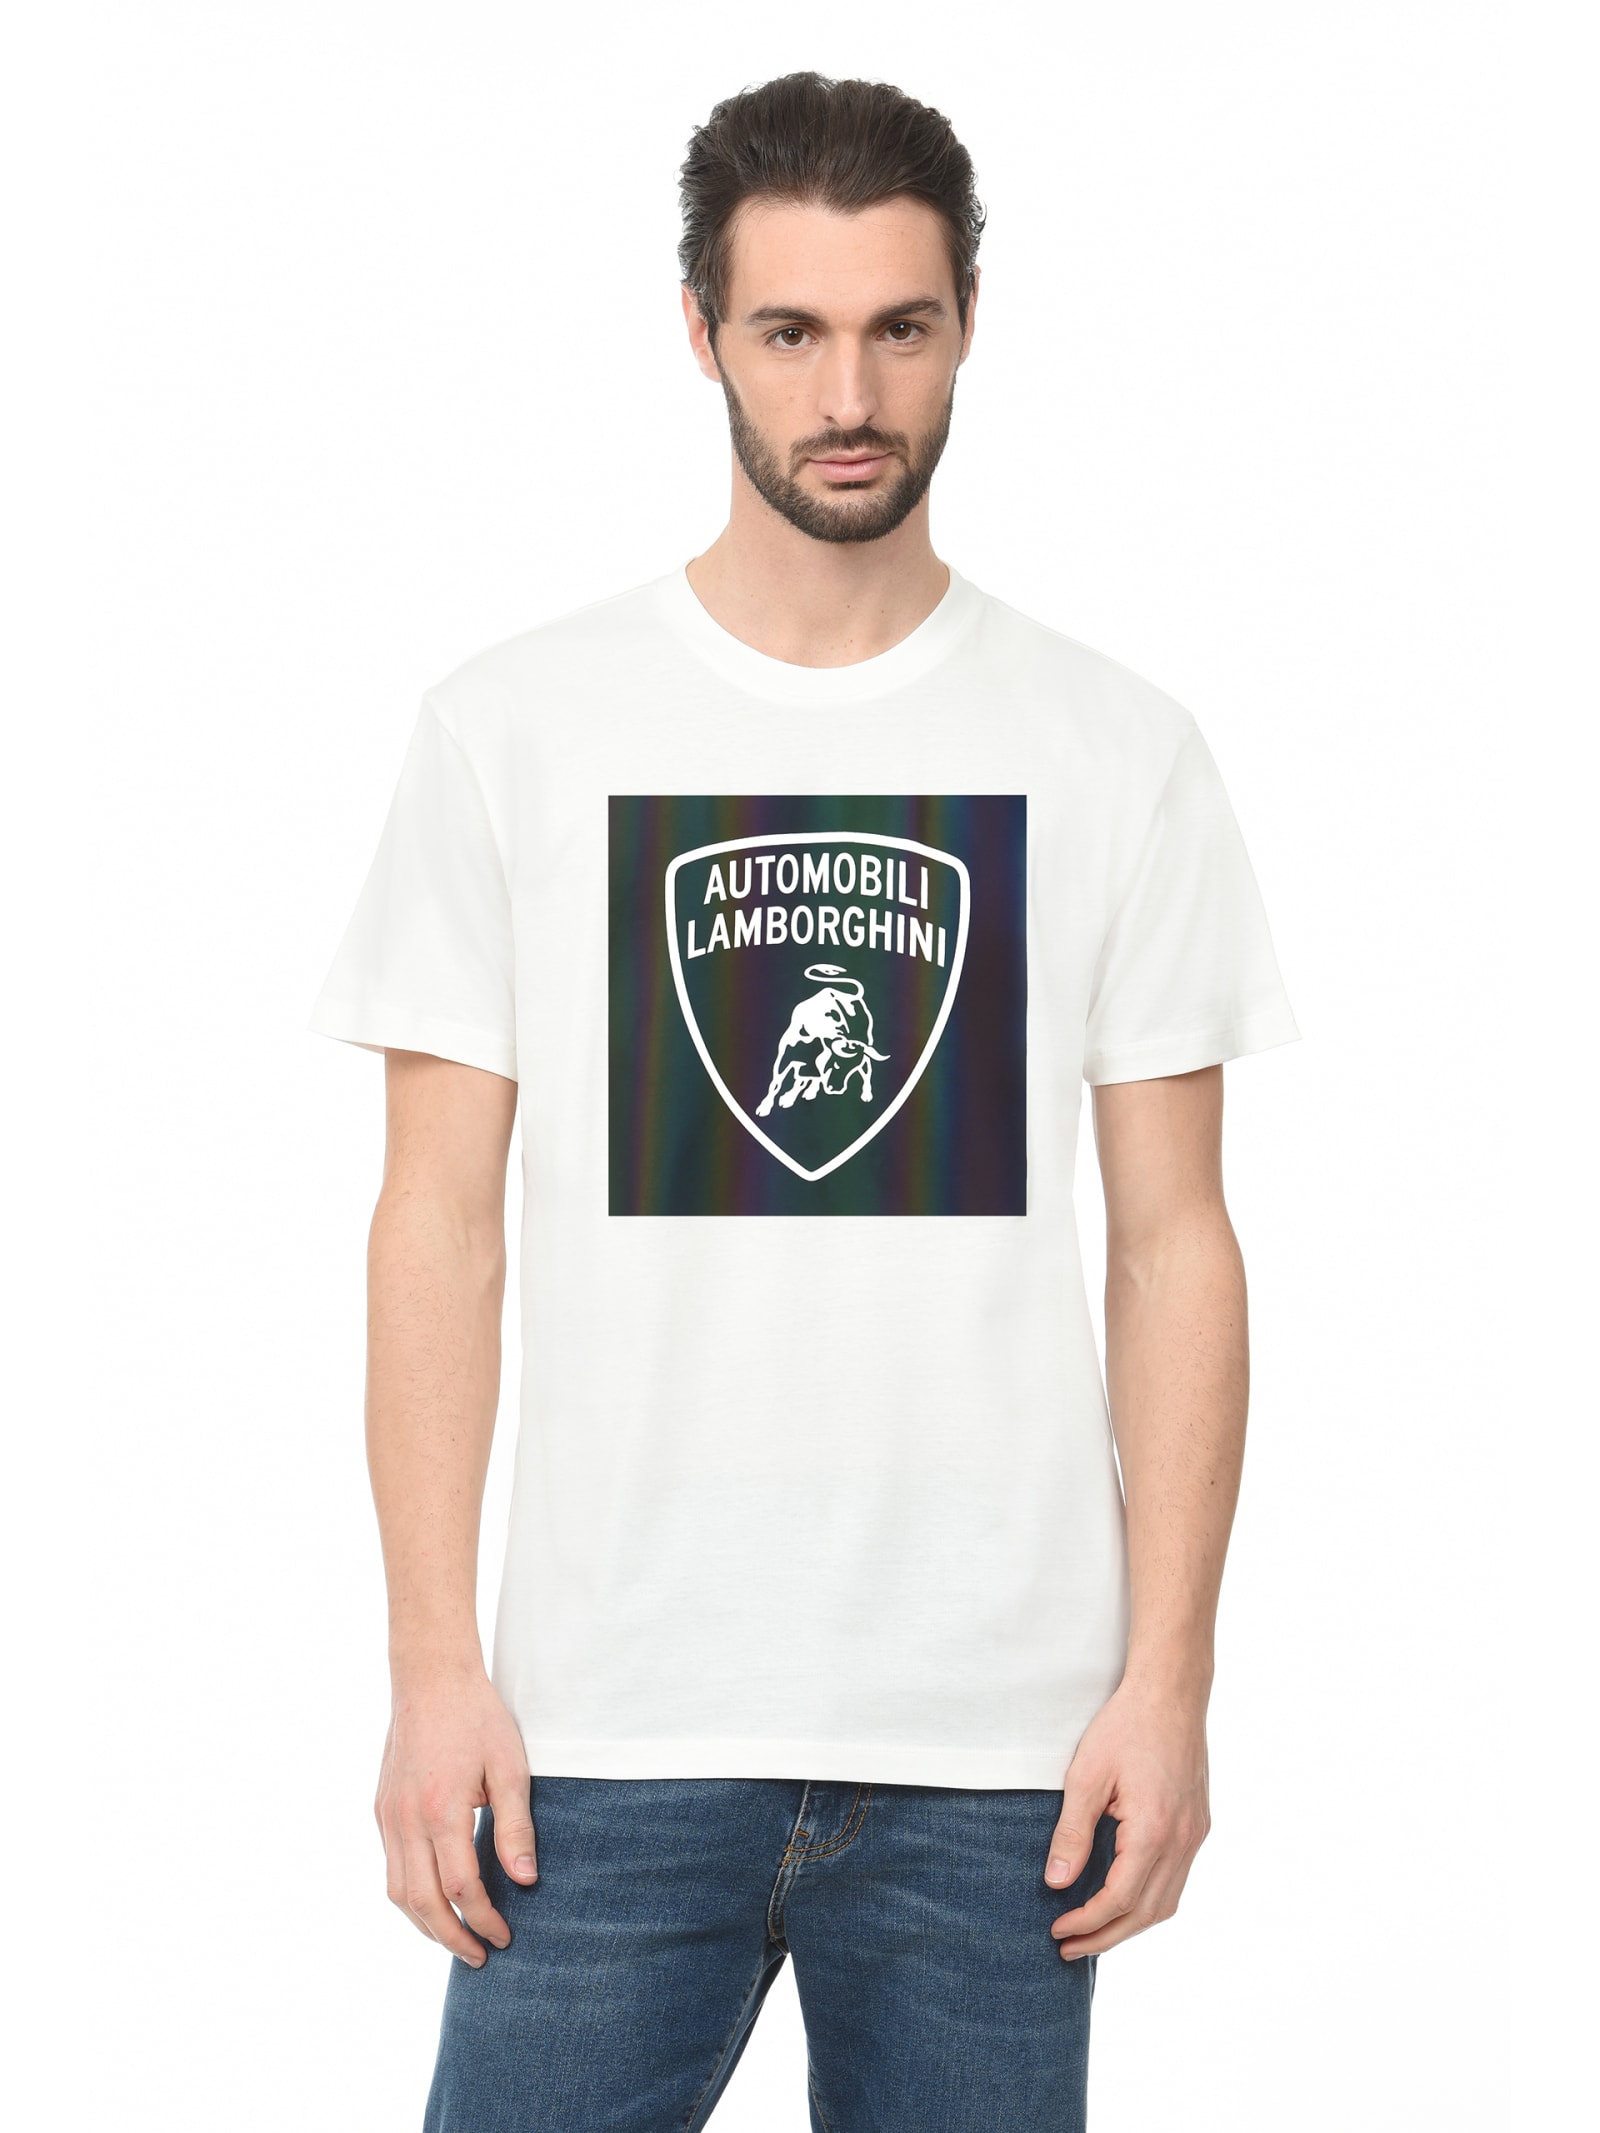 Automobili Lamborghini T-shirt 9015161 Loose Organic Cotton